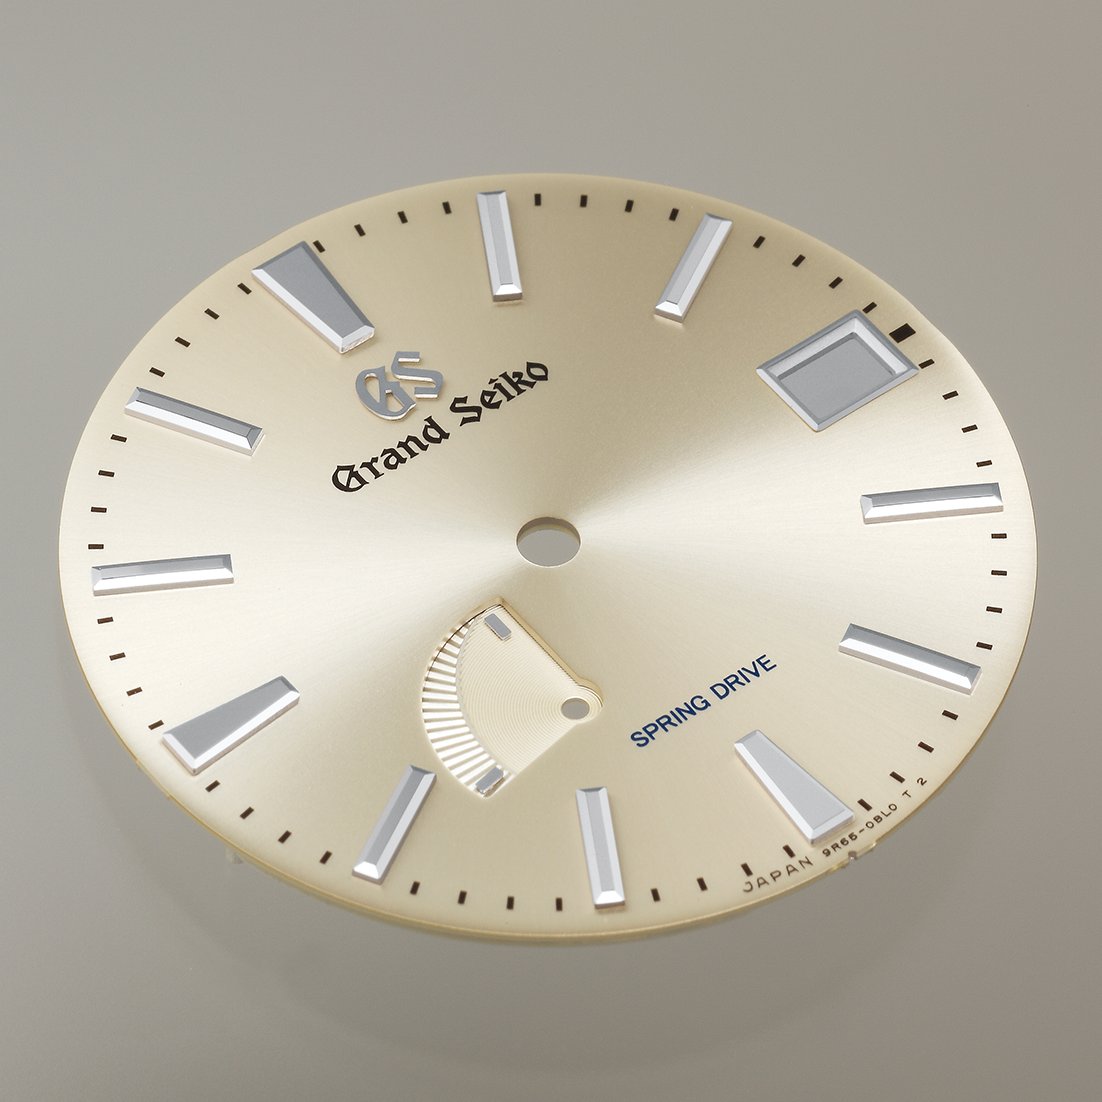 グランドセイコーSBGA201[Heritage] ﾏｽﾀｰｼｮｯﾌﾟﾓﾃﾞﾙ 【正規保証品】 Spring Drive ﾒﾝｽﾞ腕時計画像